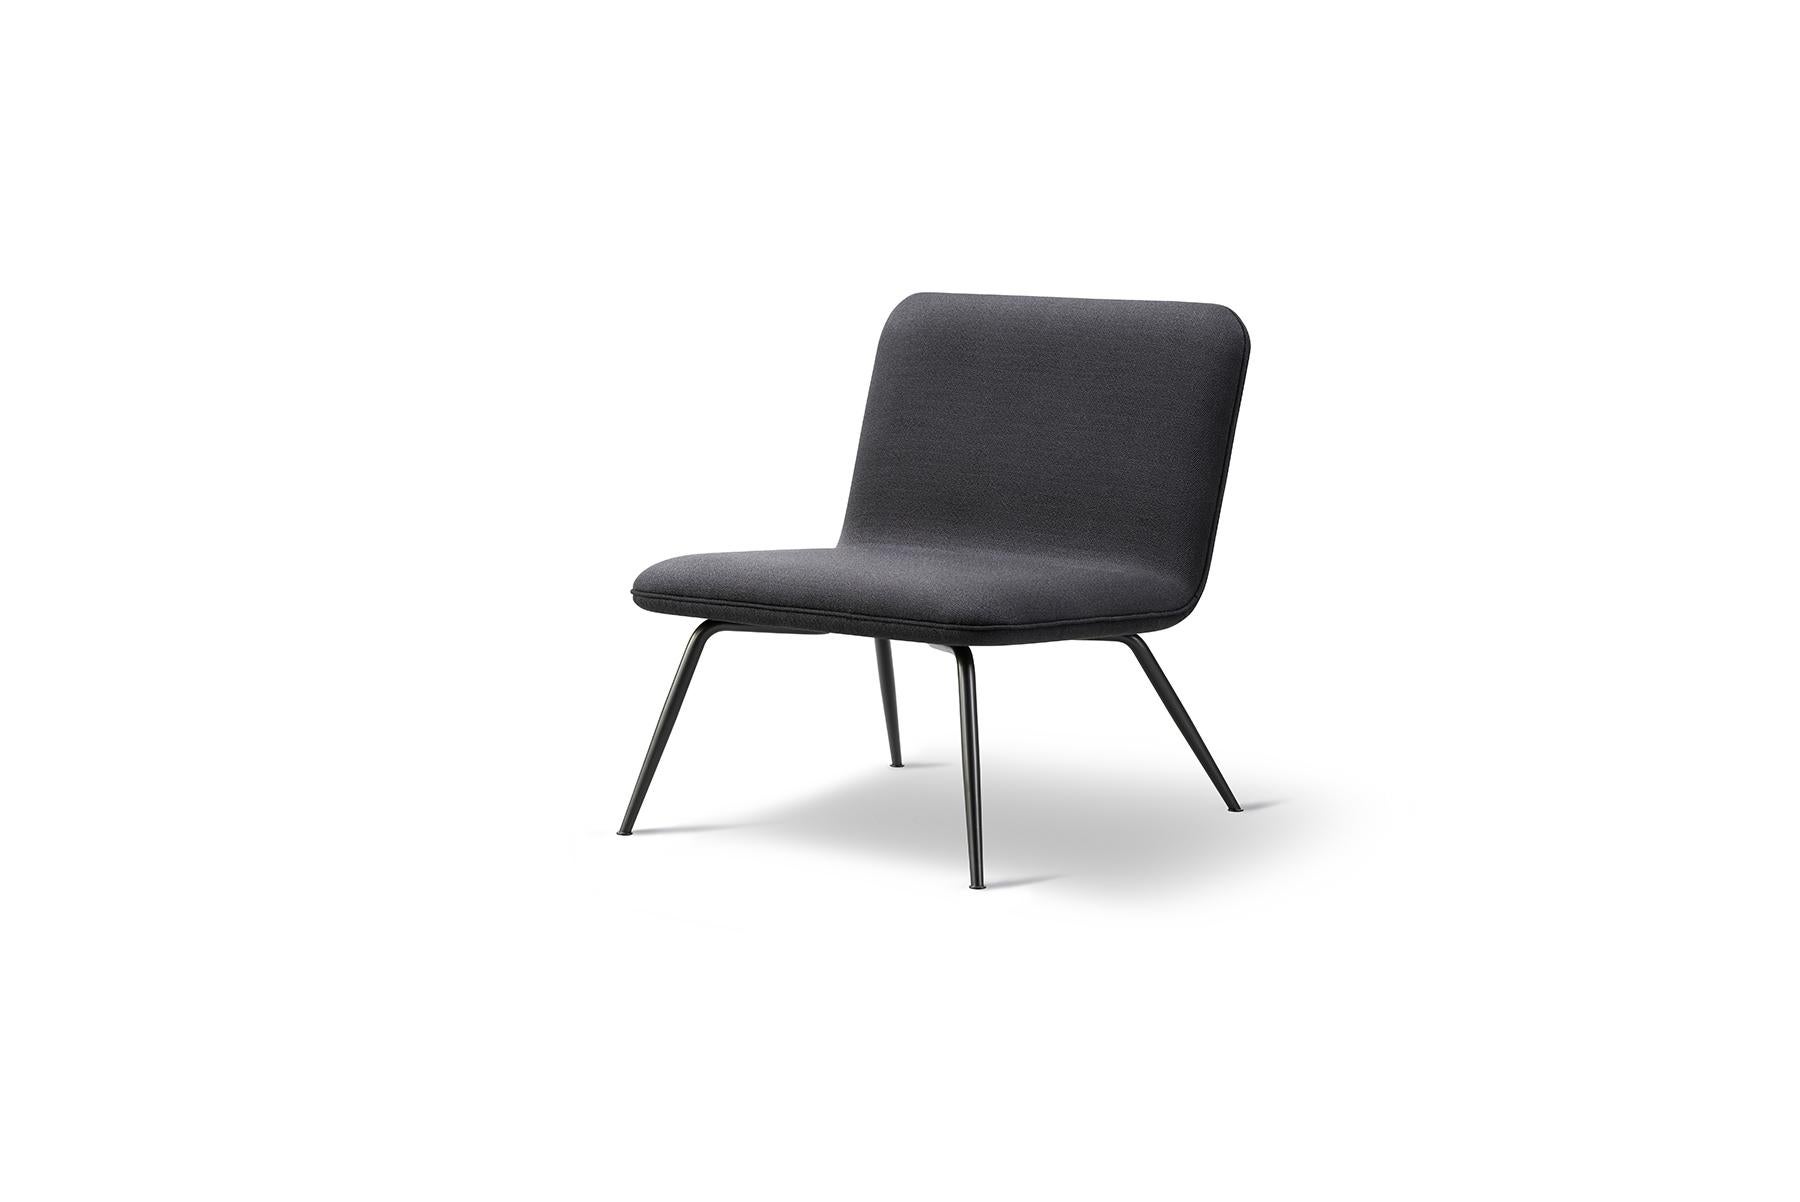 Le fauteuil de salon Space Copenhagen spine est un fauteuil de salon léger pour les résidences ou les espaces de salon ouverts. Les détails accentués de l'assise entièrement rembourrée, en cuir ou en tissu, rendent cette chaise aussi belle au milieu